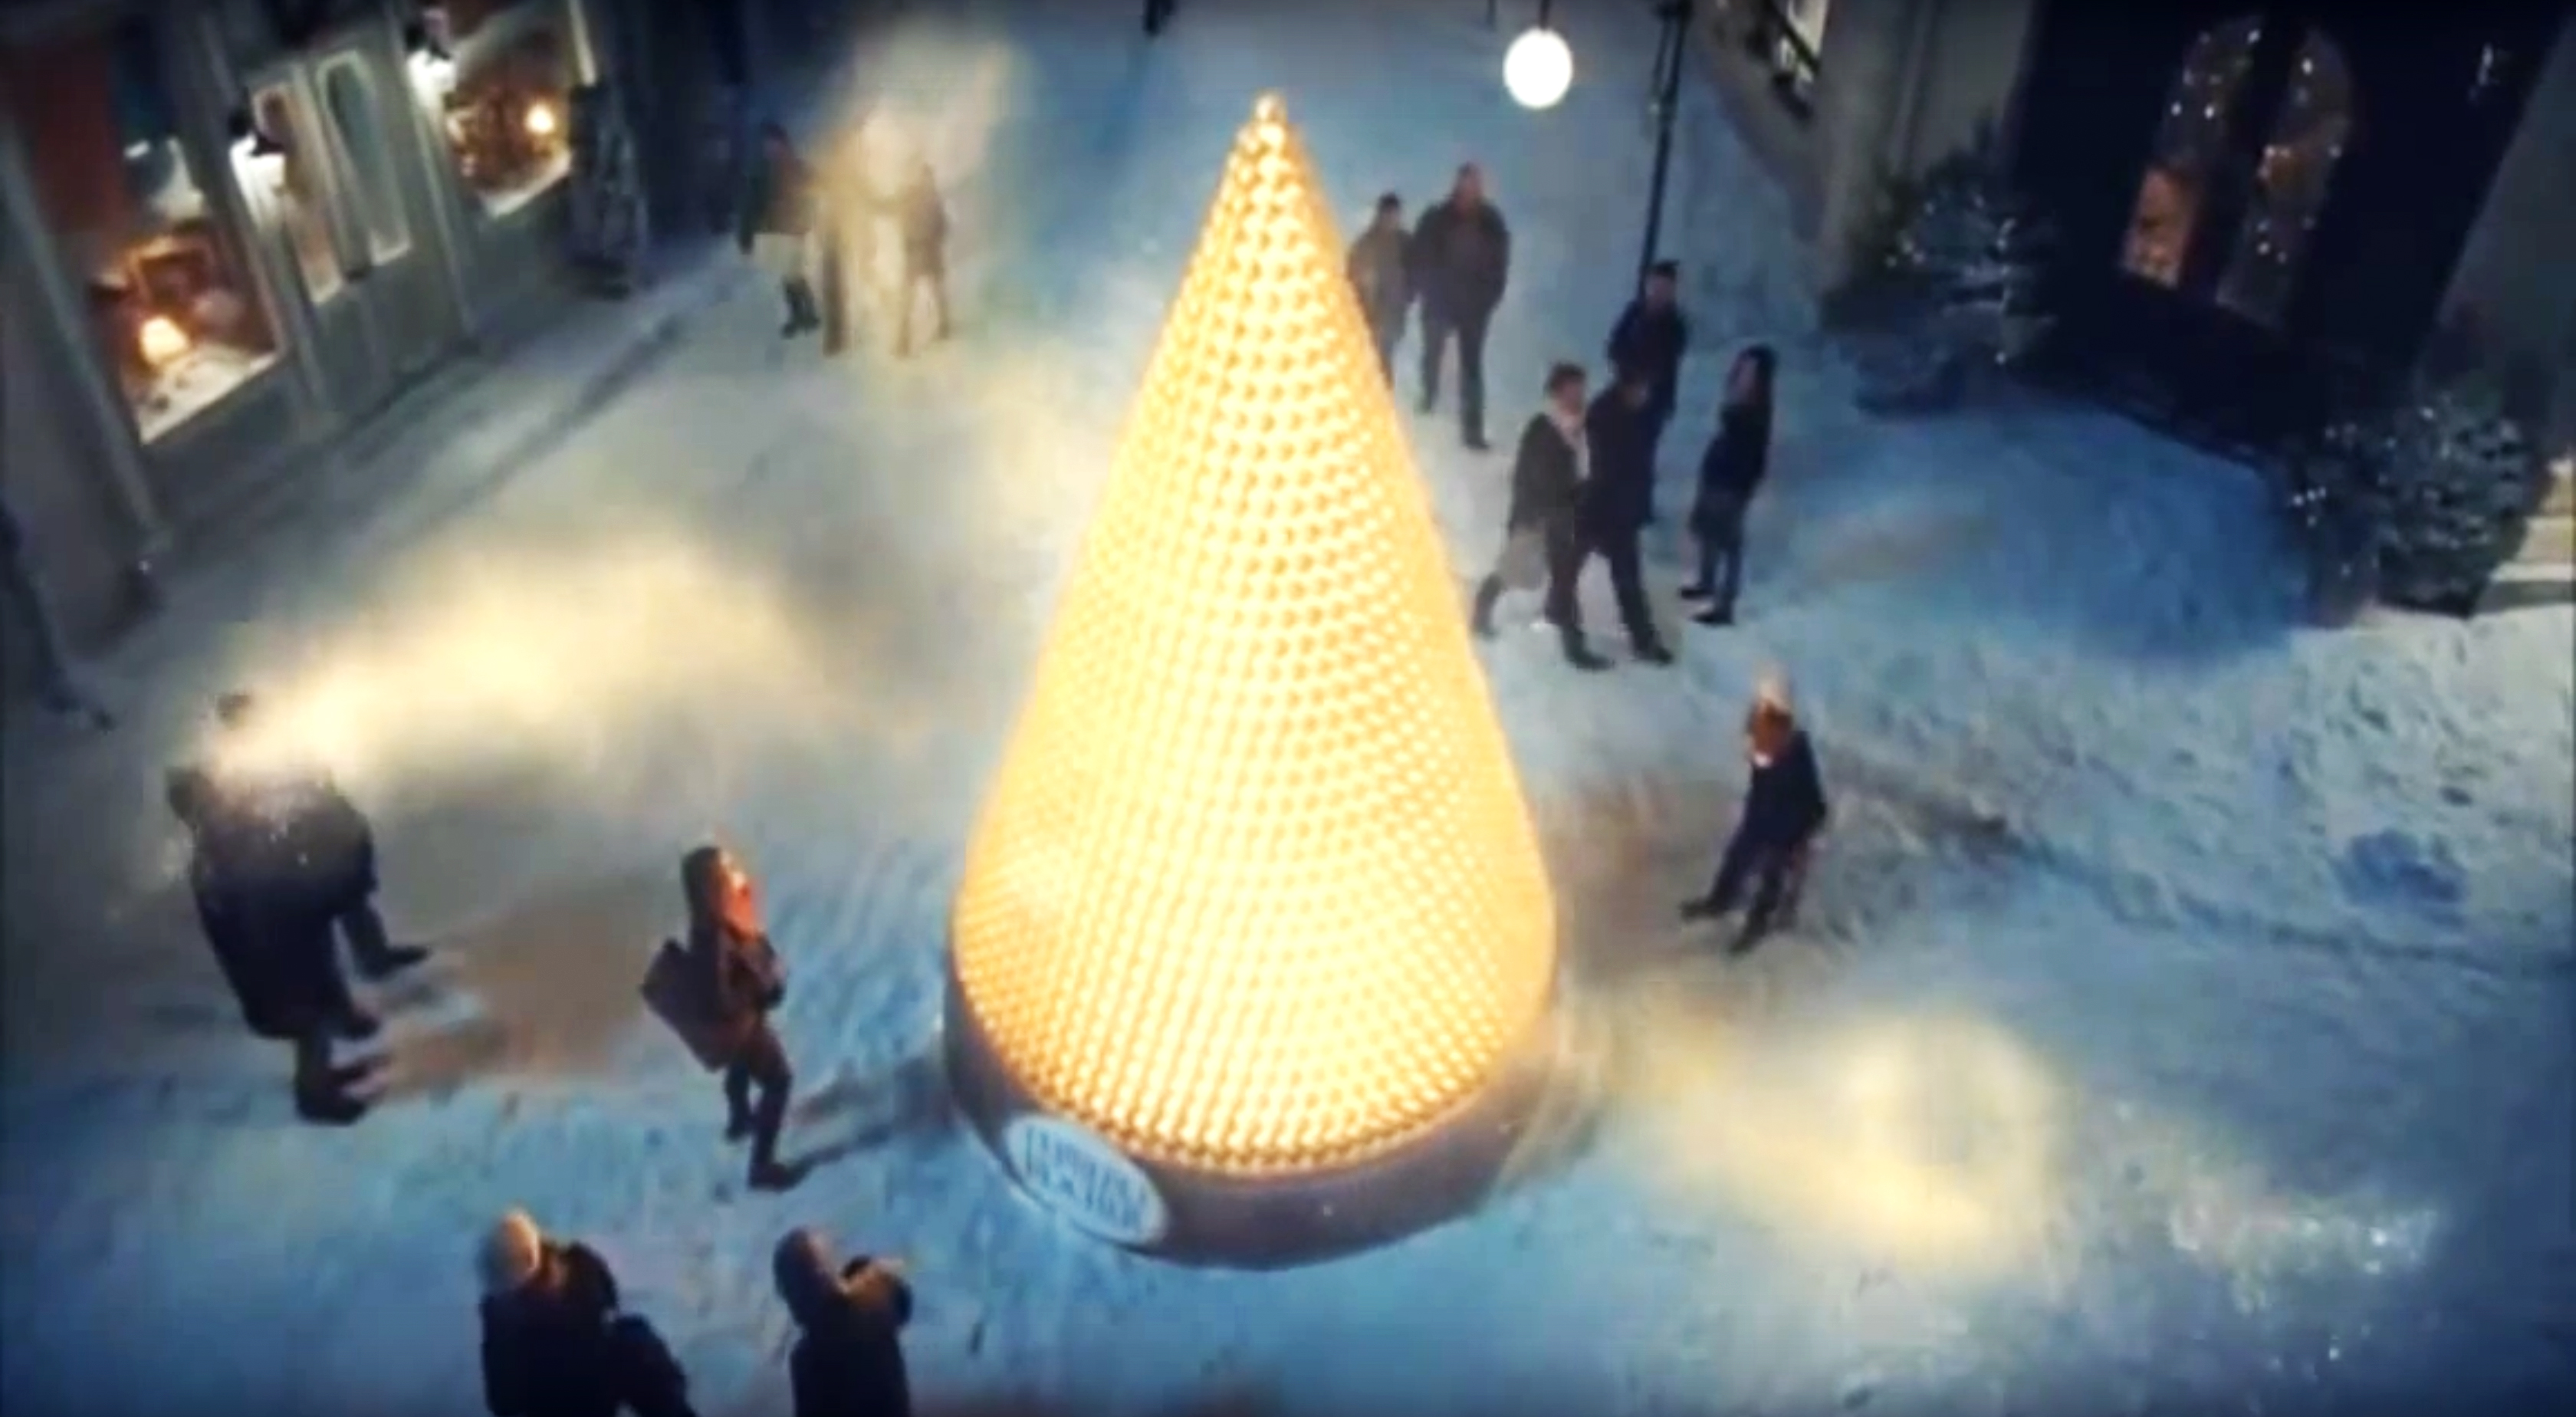 Ferrero Rocher Werbung 2015 zu Weihnachten